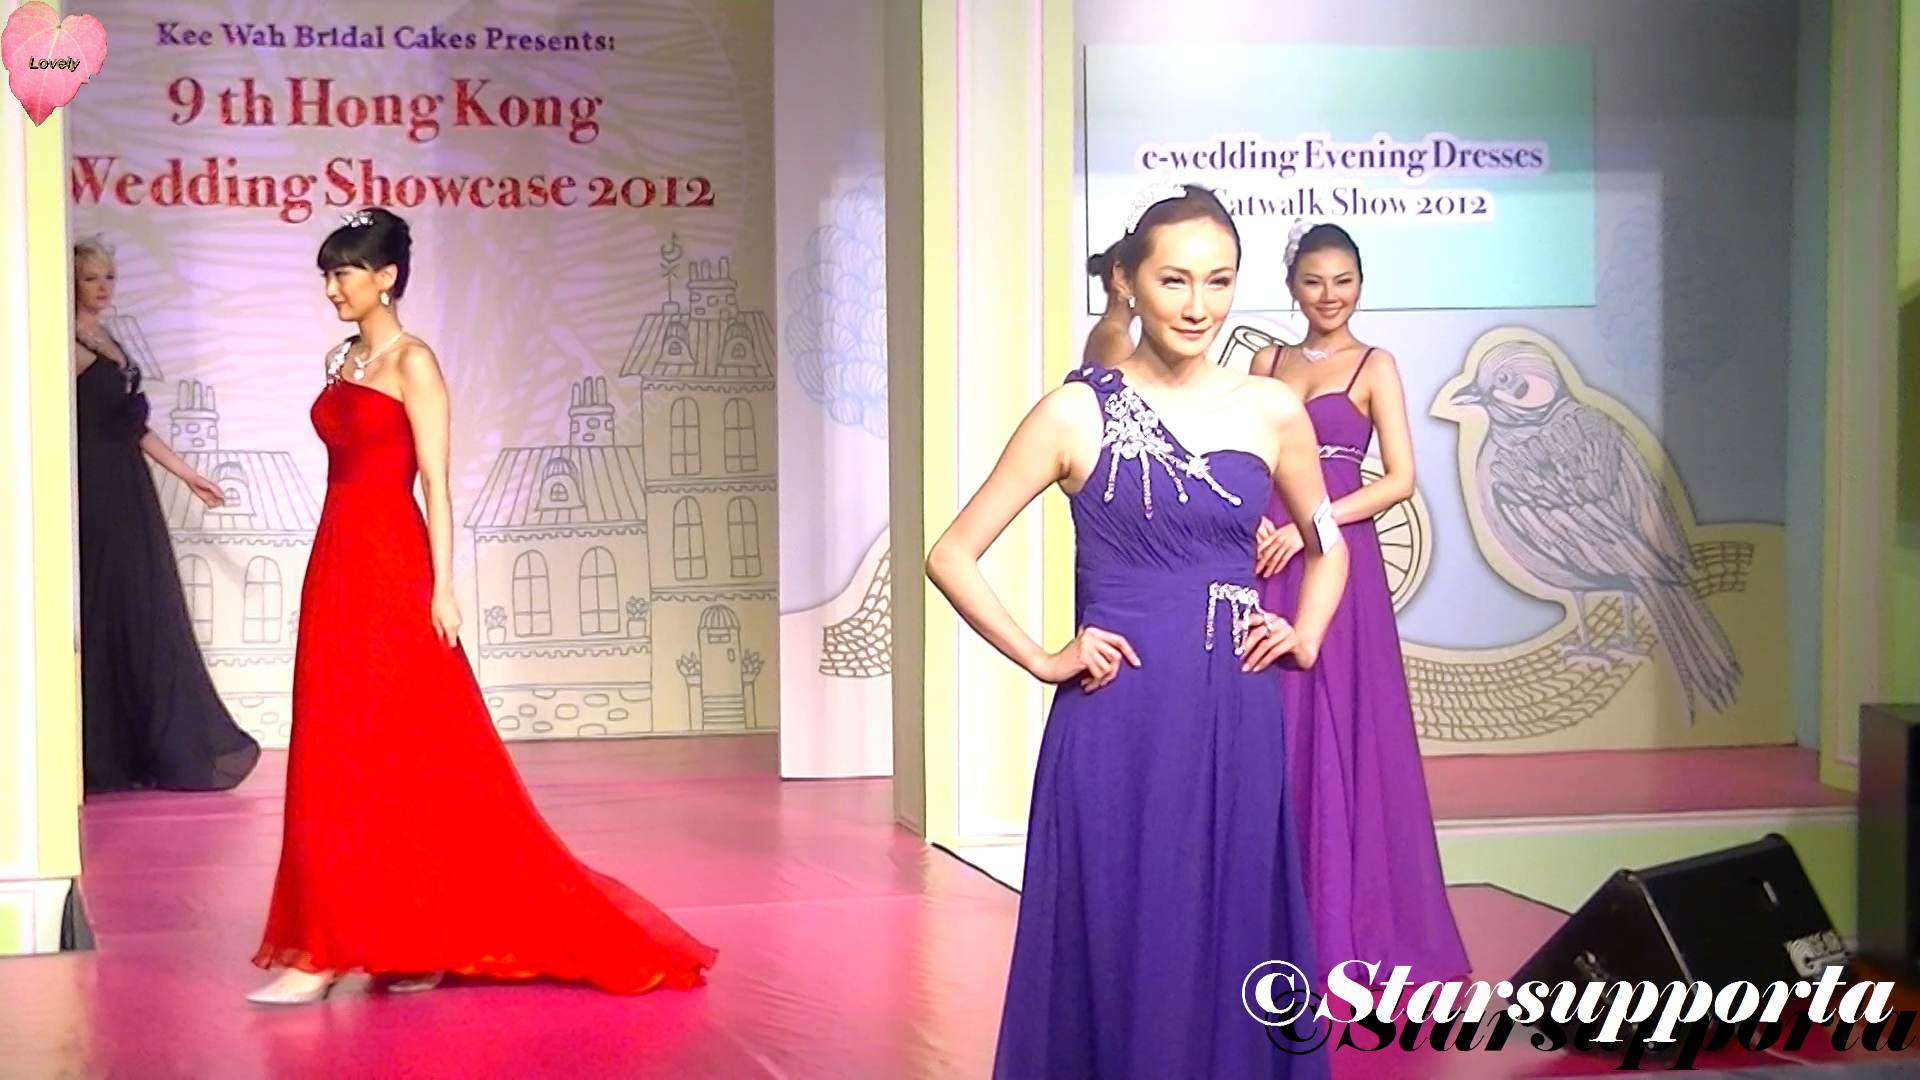 20120428 9th Hong Kong Wedding Showcase 2012 - e-wedding Evening Dress Catwalk Show 2012 @ 香港Emax (video)